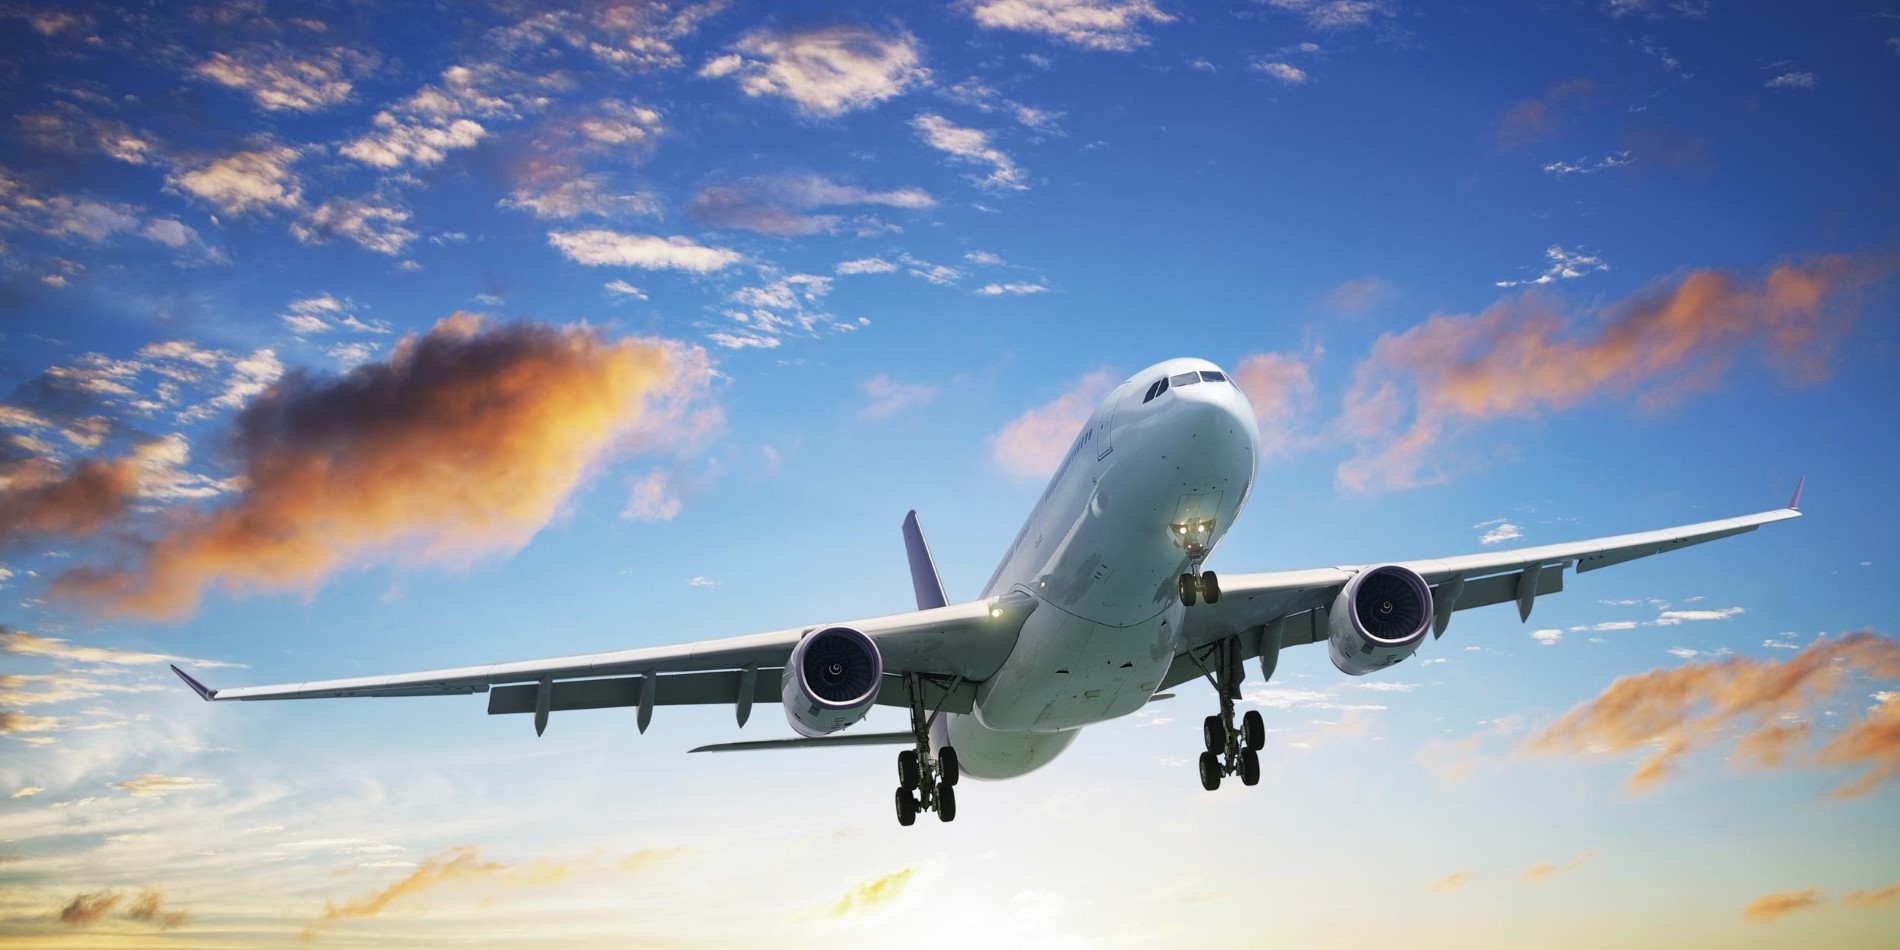 Ein großer Passagierjet fliegt durch einen wolkenverhangenen blauen Himmel